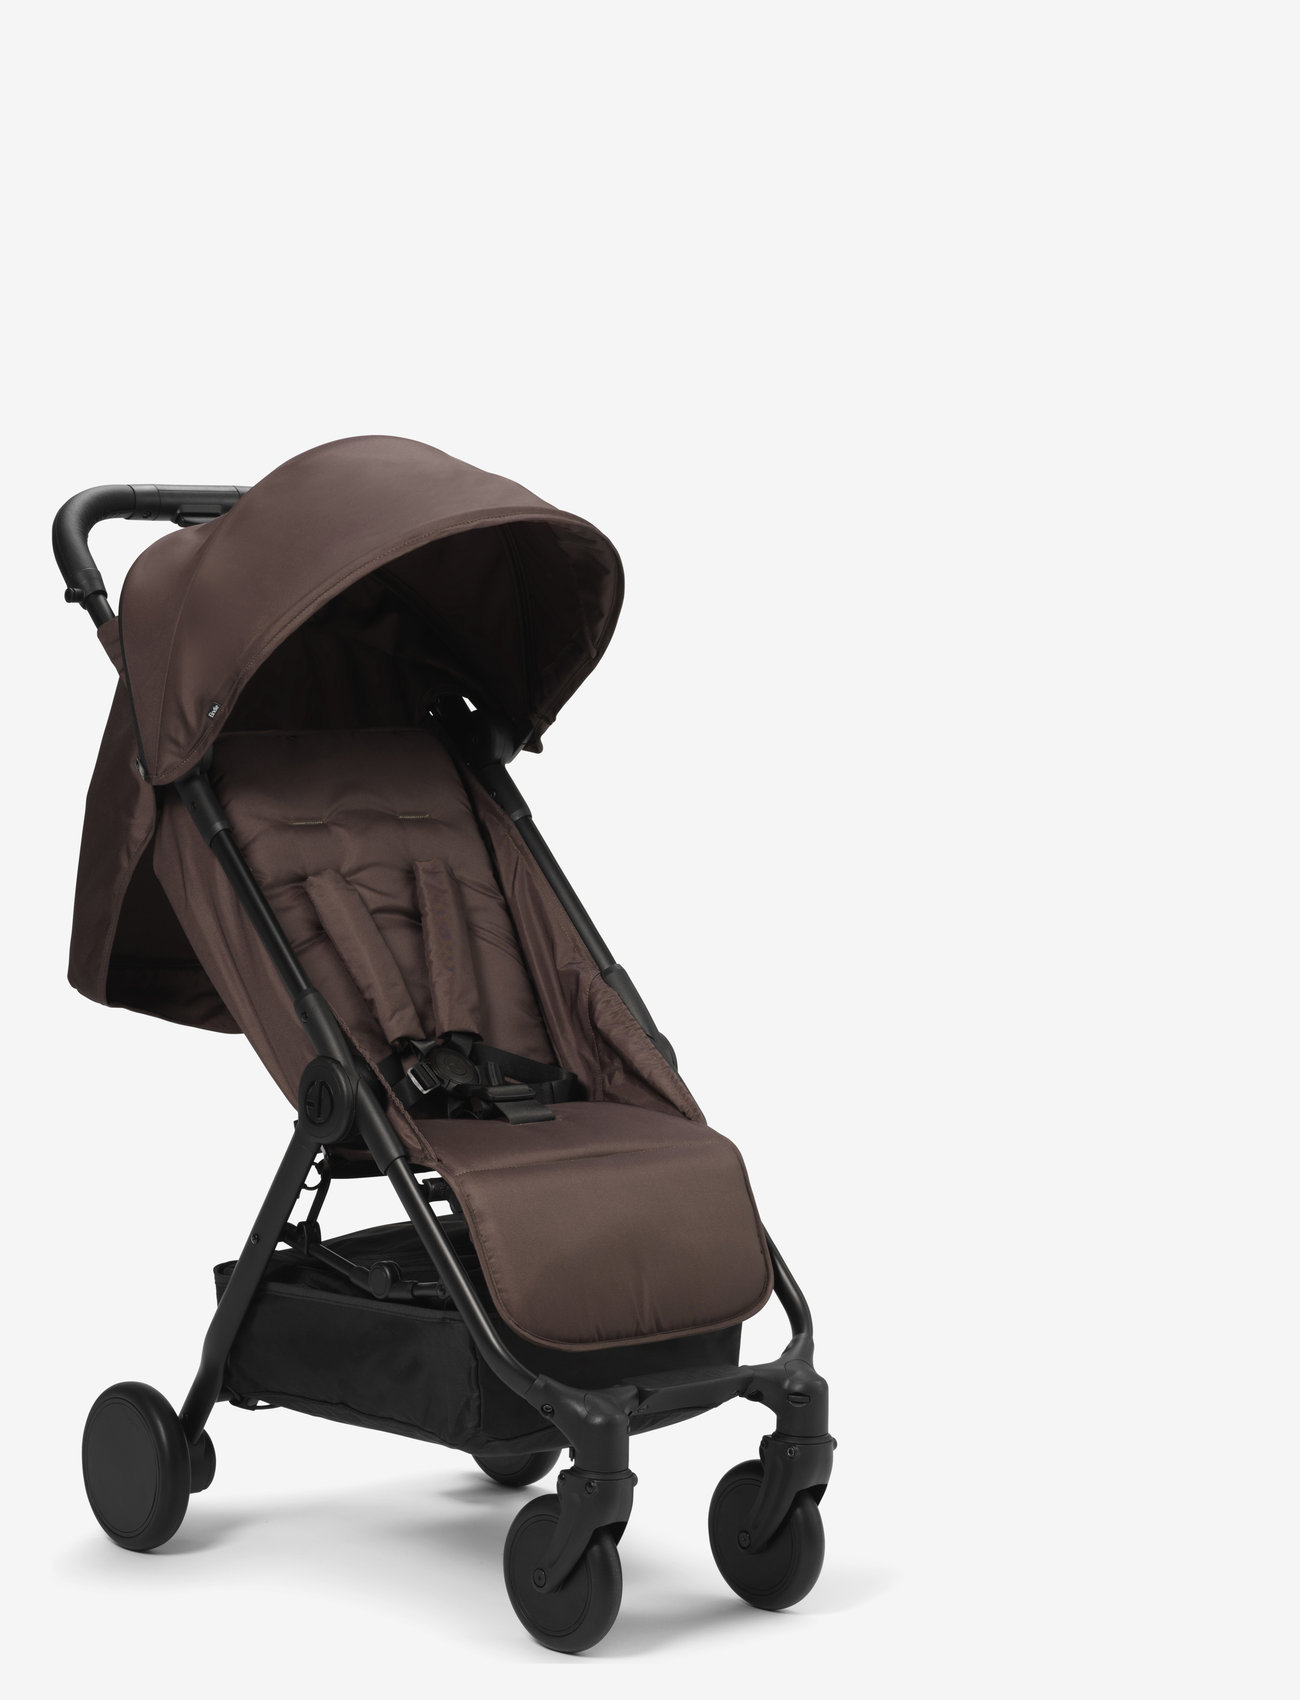 Elodie Details - MONDO Stroller - Chocolate - strollers - brown/black - 0